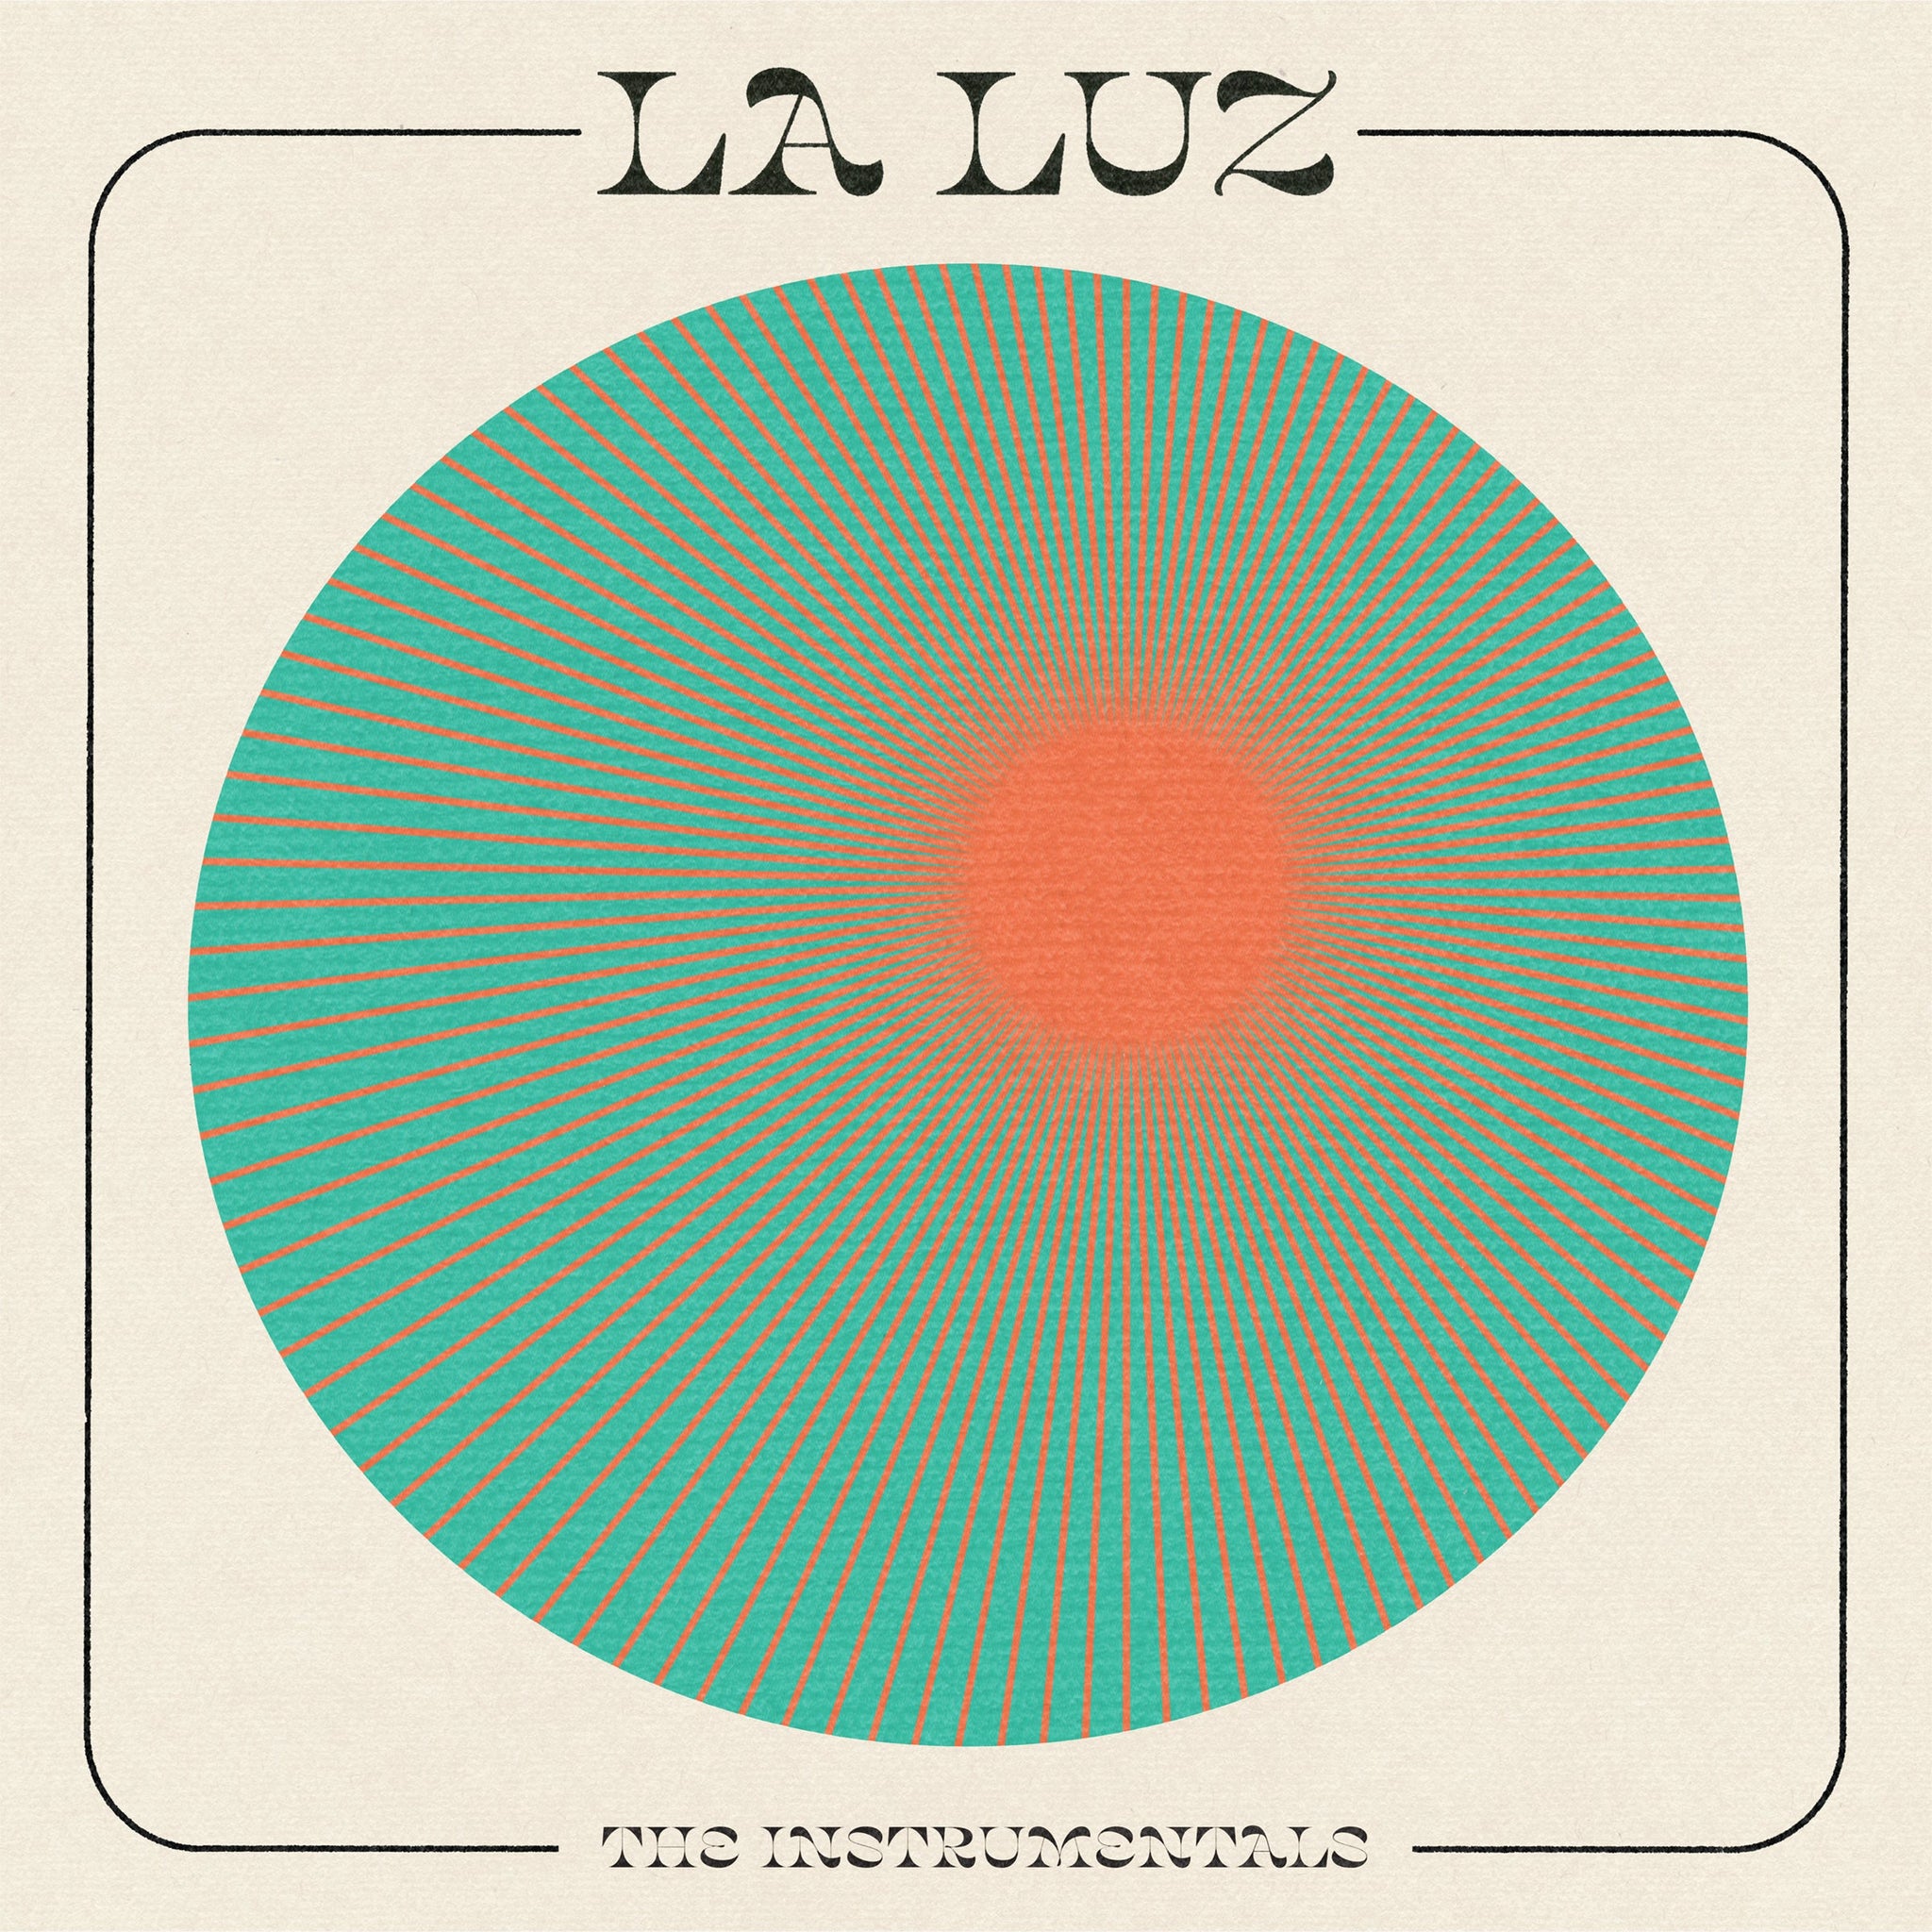 La Luz - The Instrumentals